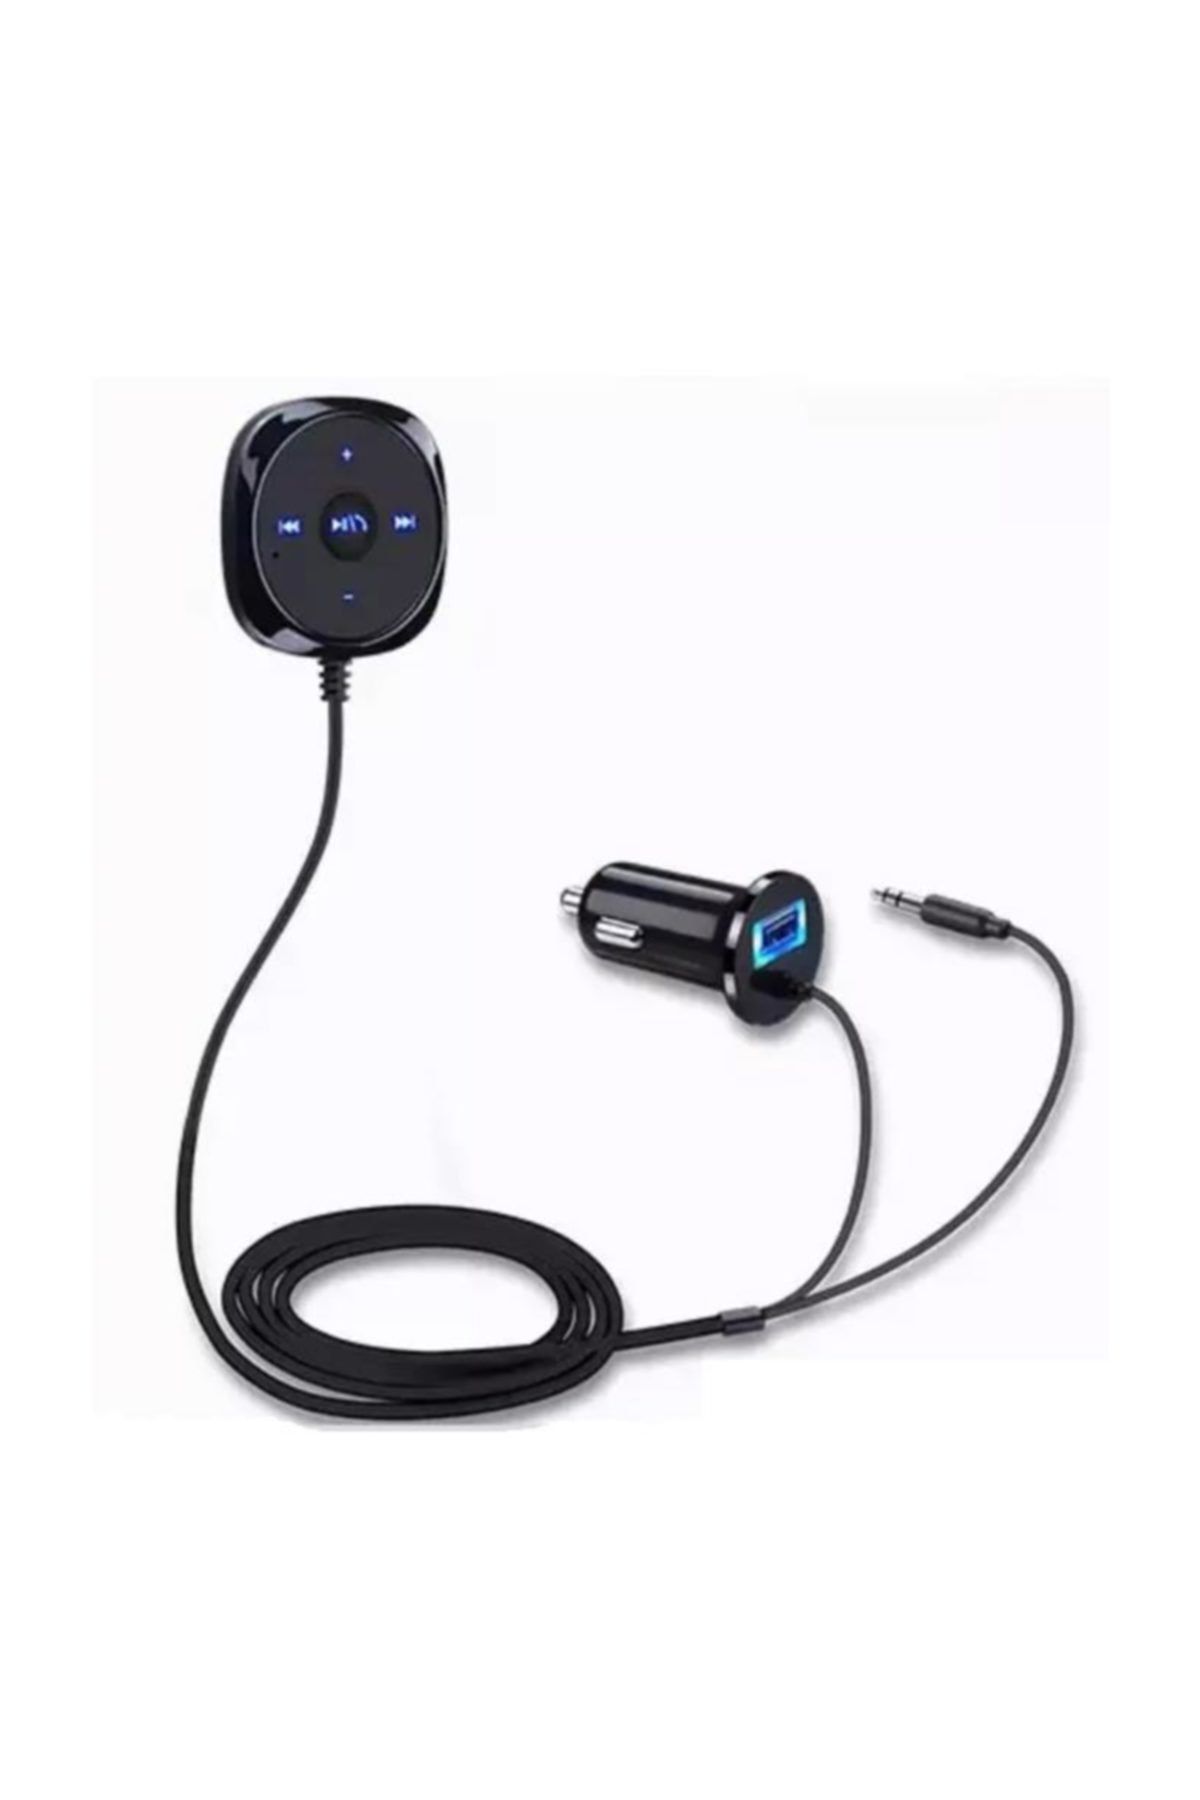 imax Bluetooth Araç Kiti Manyetik Taban Handsfree MP3 Çalar 3.5mm AUX Ses Müzik Alıcısı Adaptörü USB Şarj